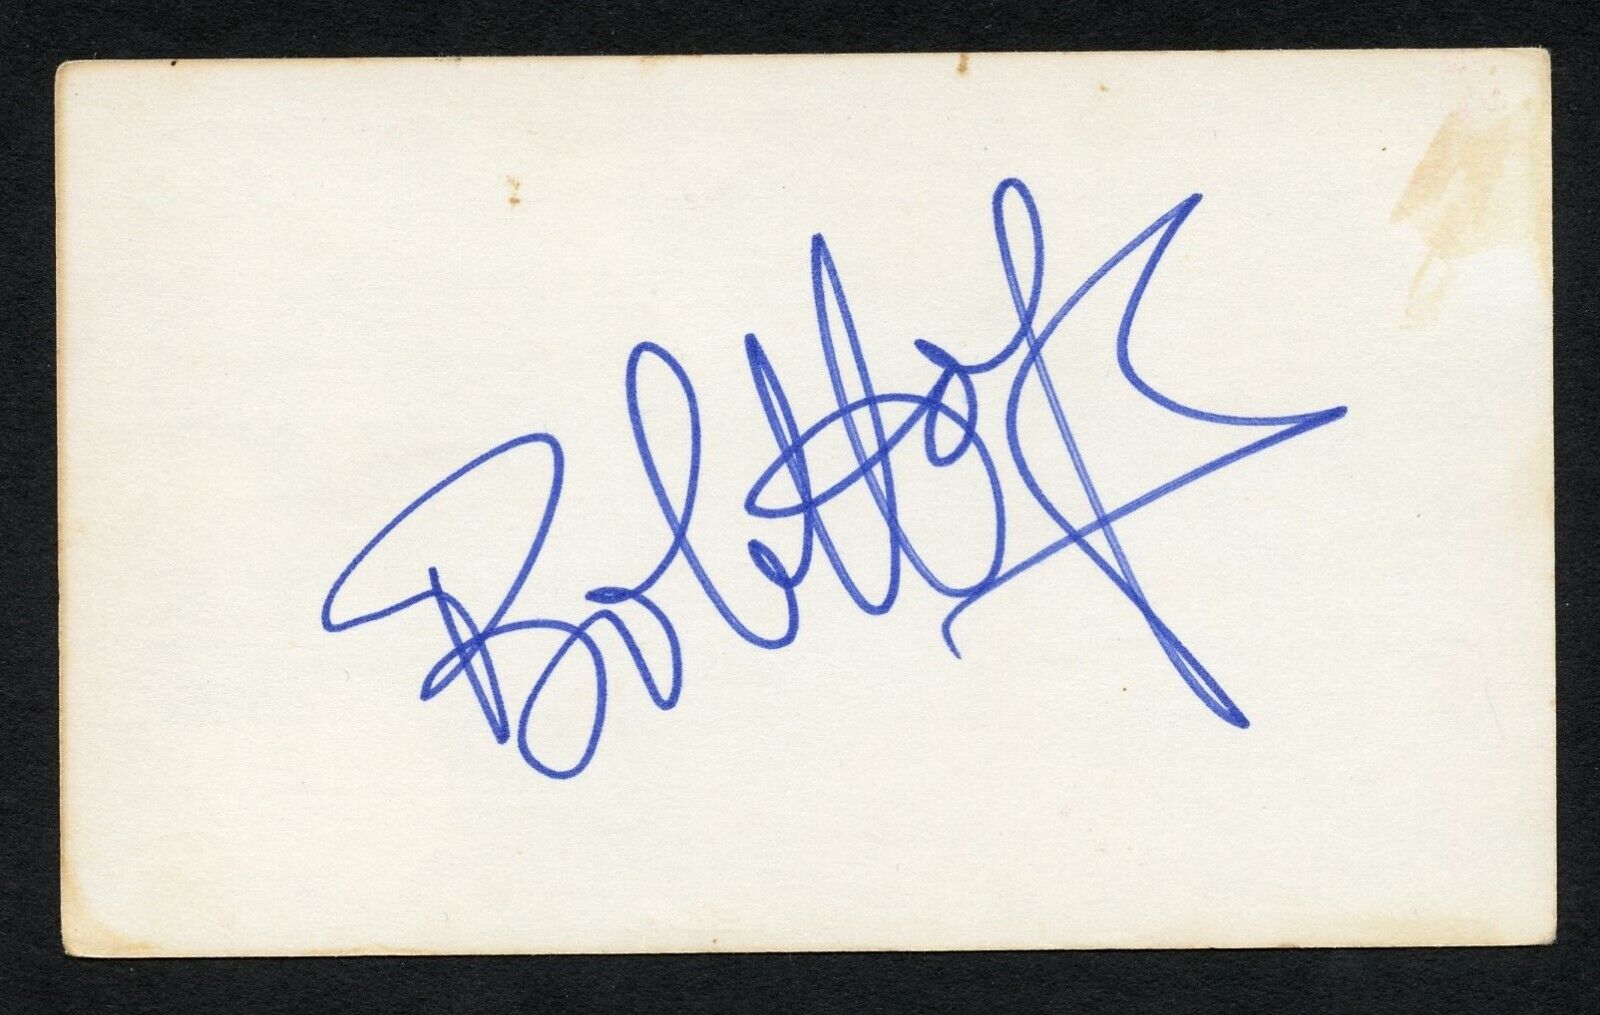 Bob Hope d2003 signed autograph auto 3x5 card Comedian Actor Singer Dancer BAS